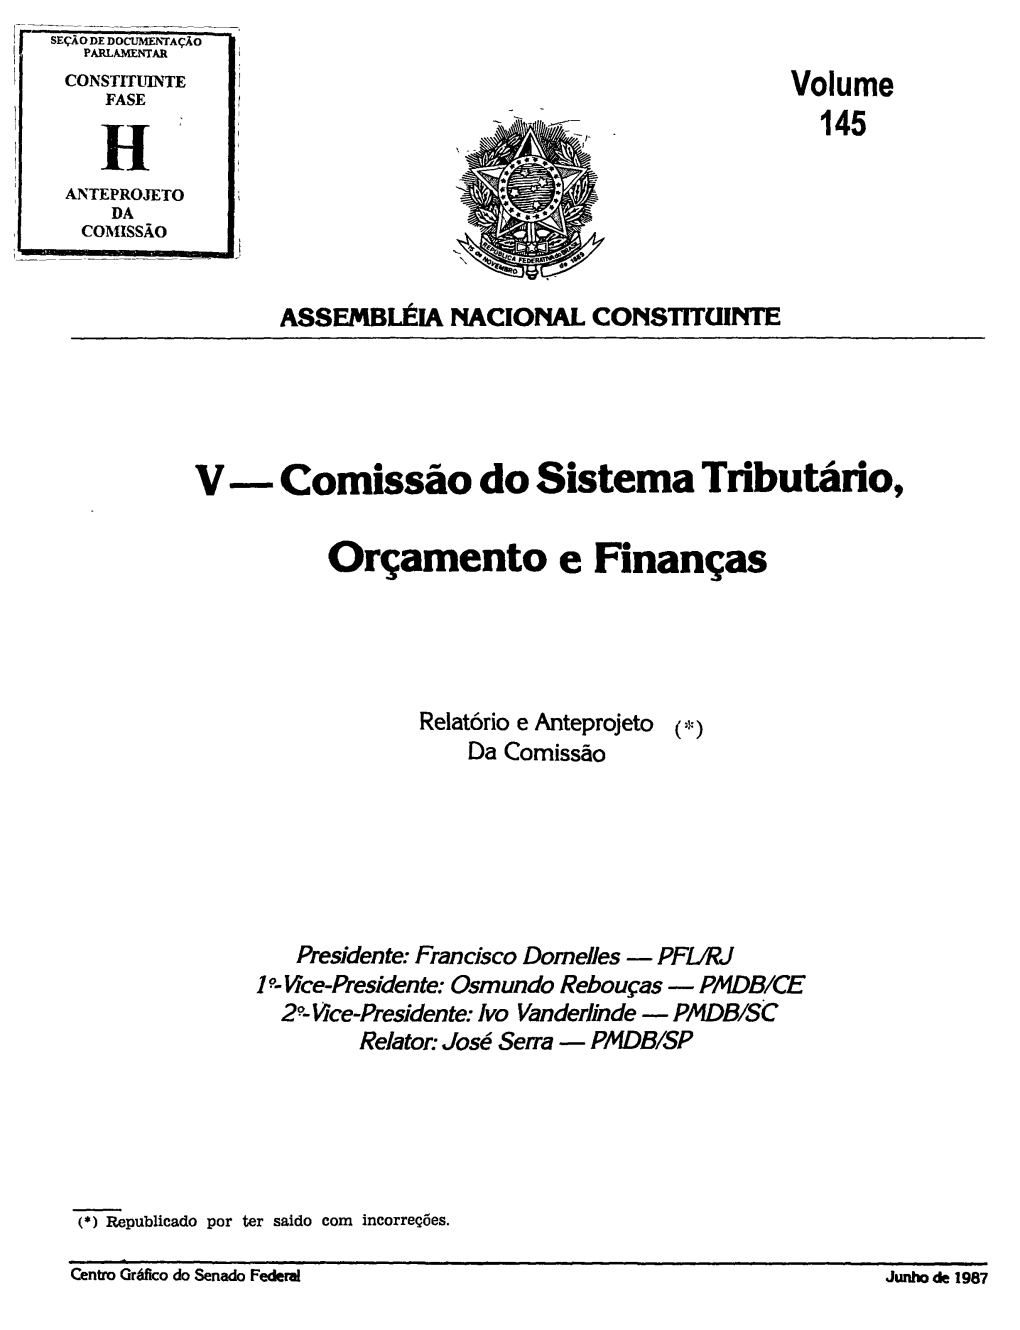 V- Comissão Do Sistema Tributário, Orçamento E Finanças